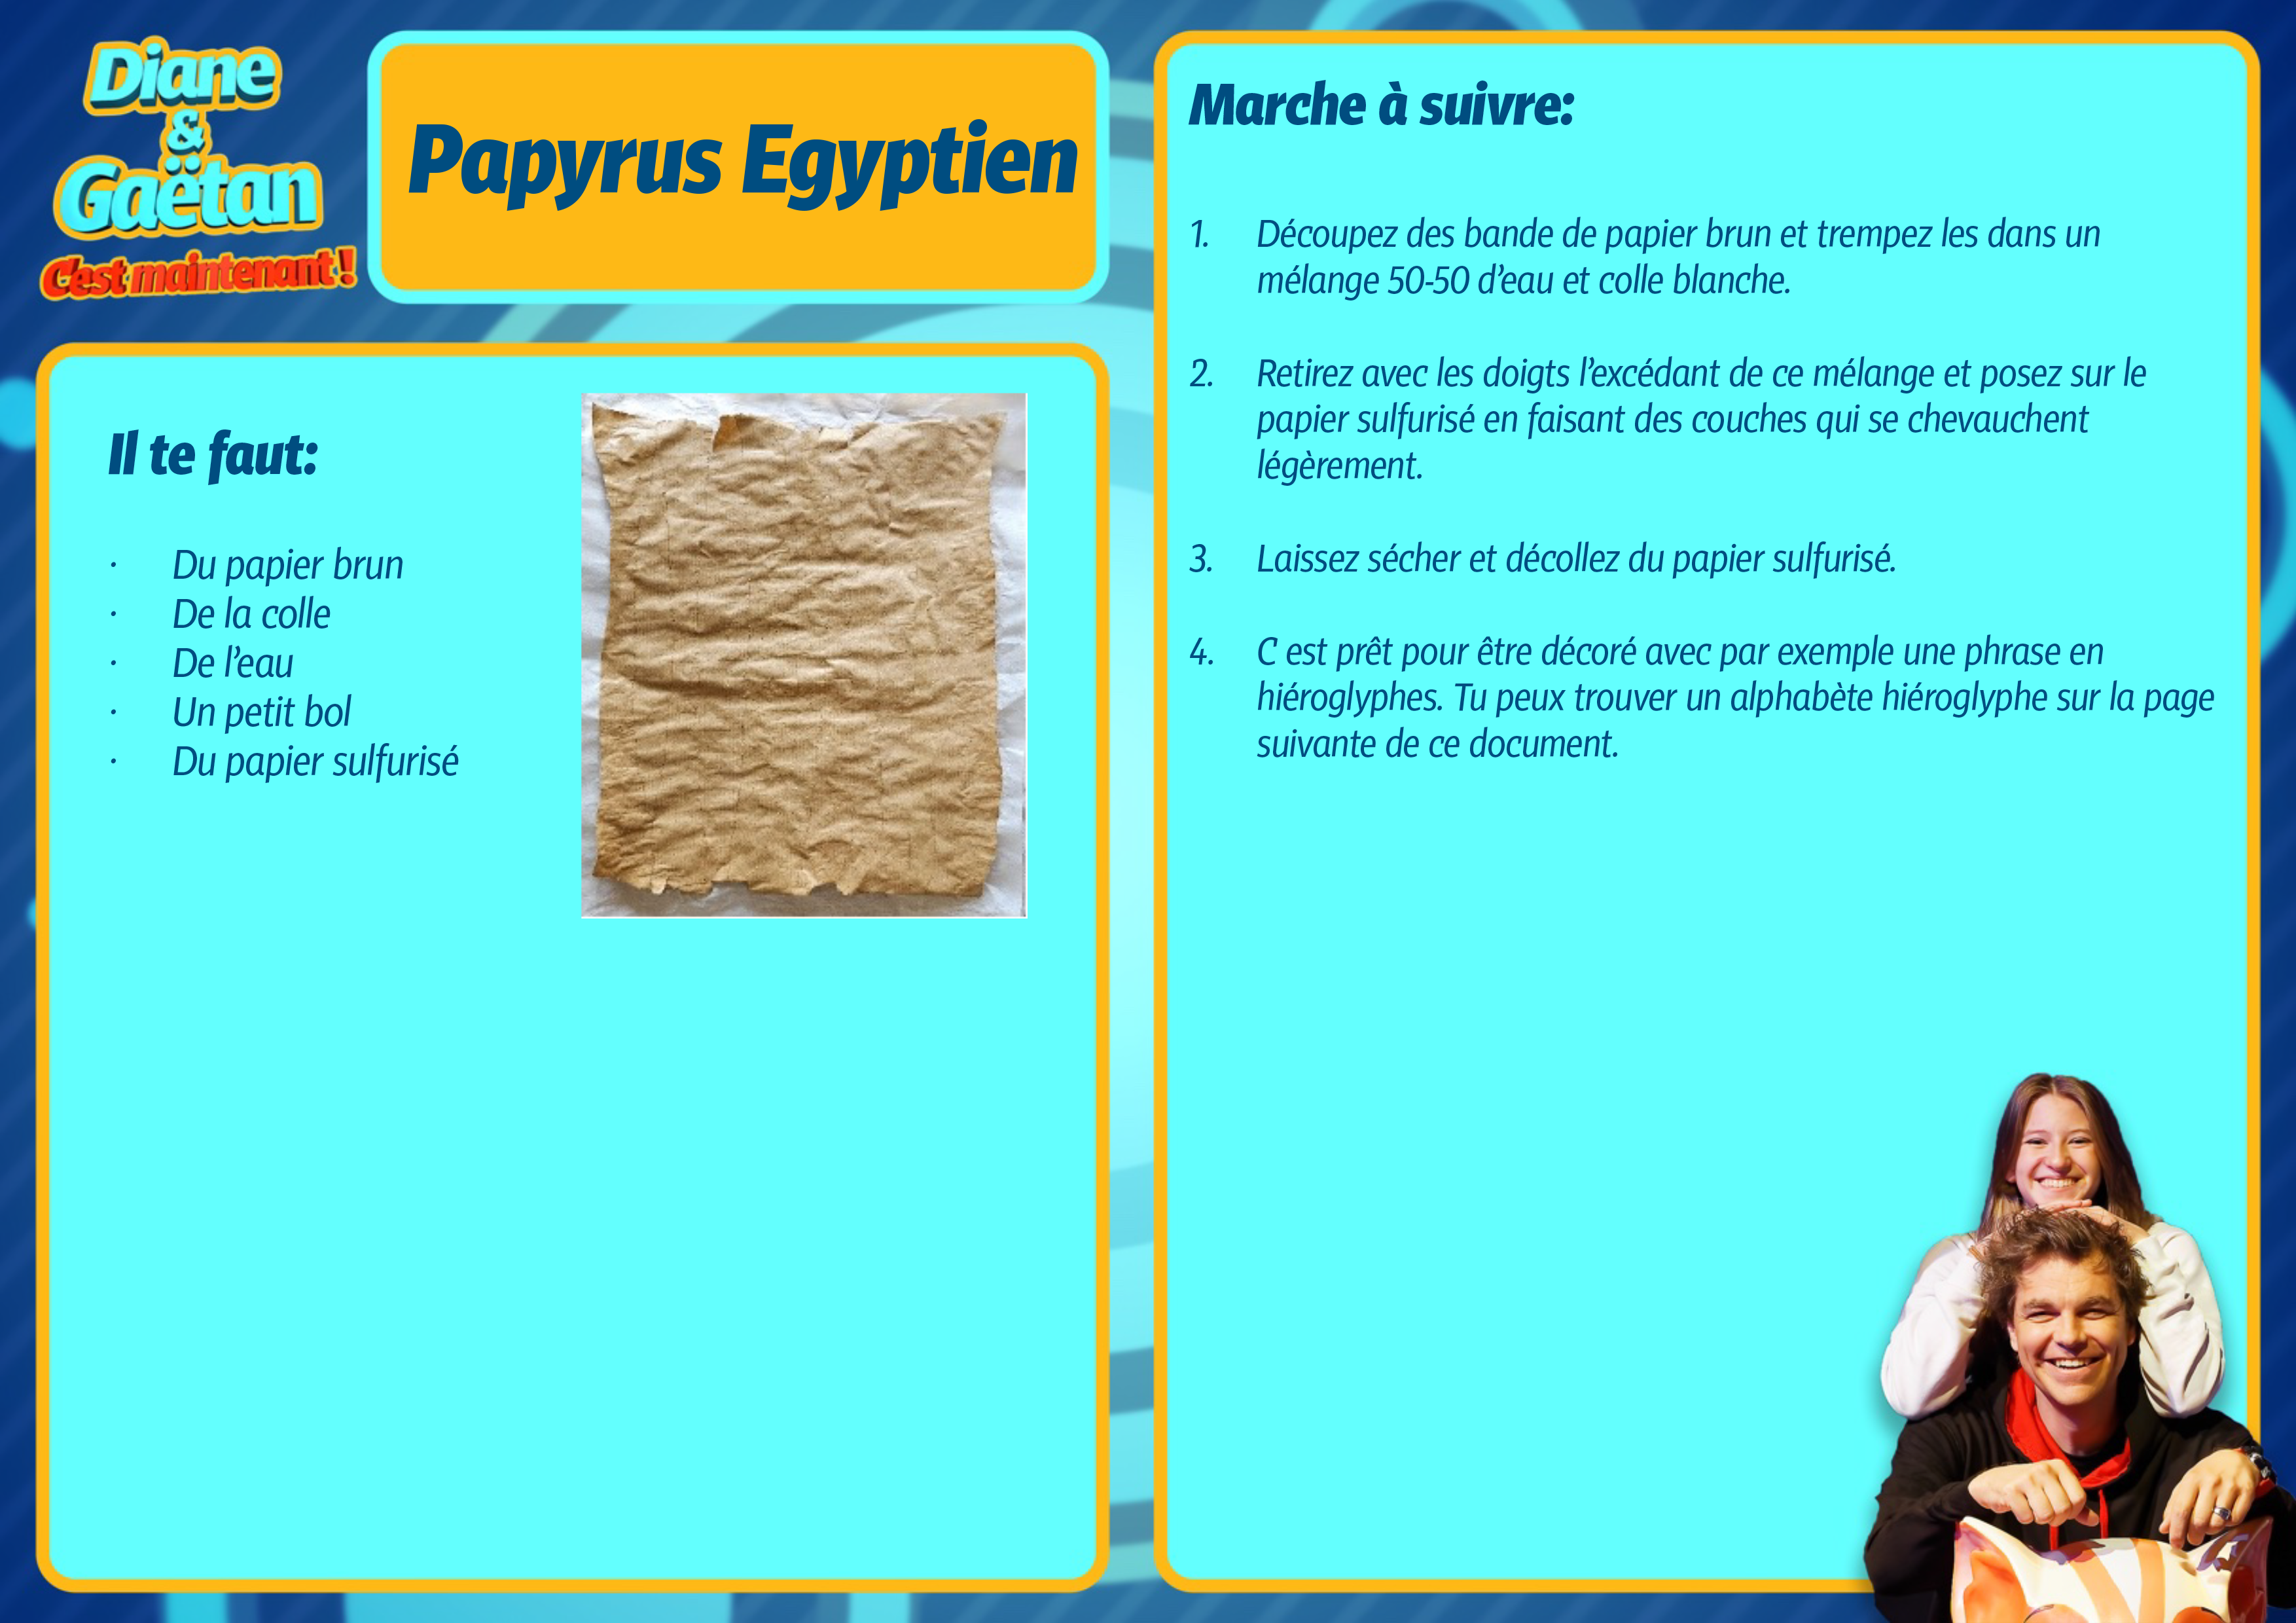 Le papyrus égyptien [RTS]